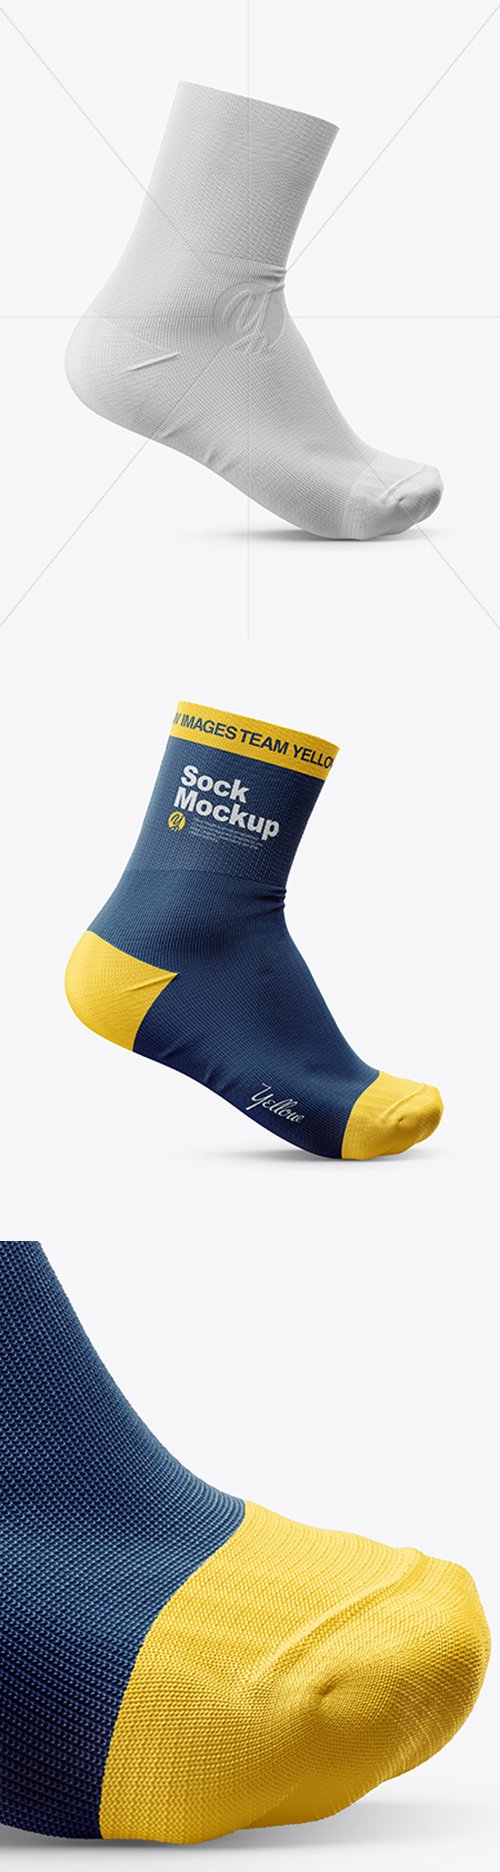 Sock Mockup 28721